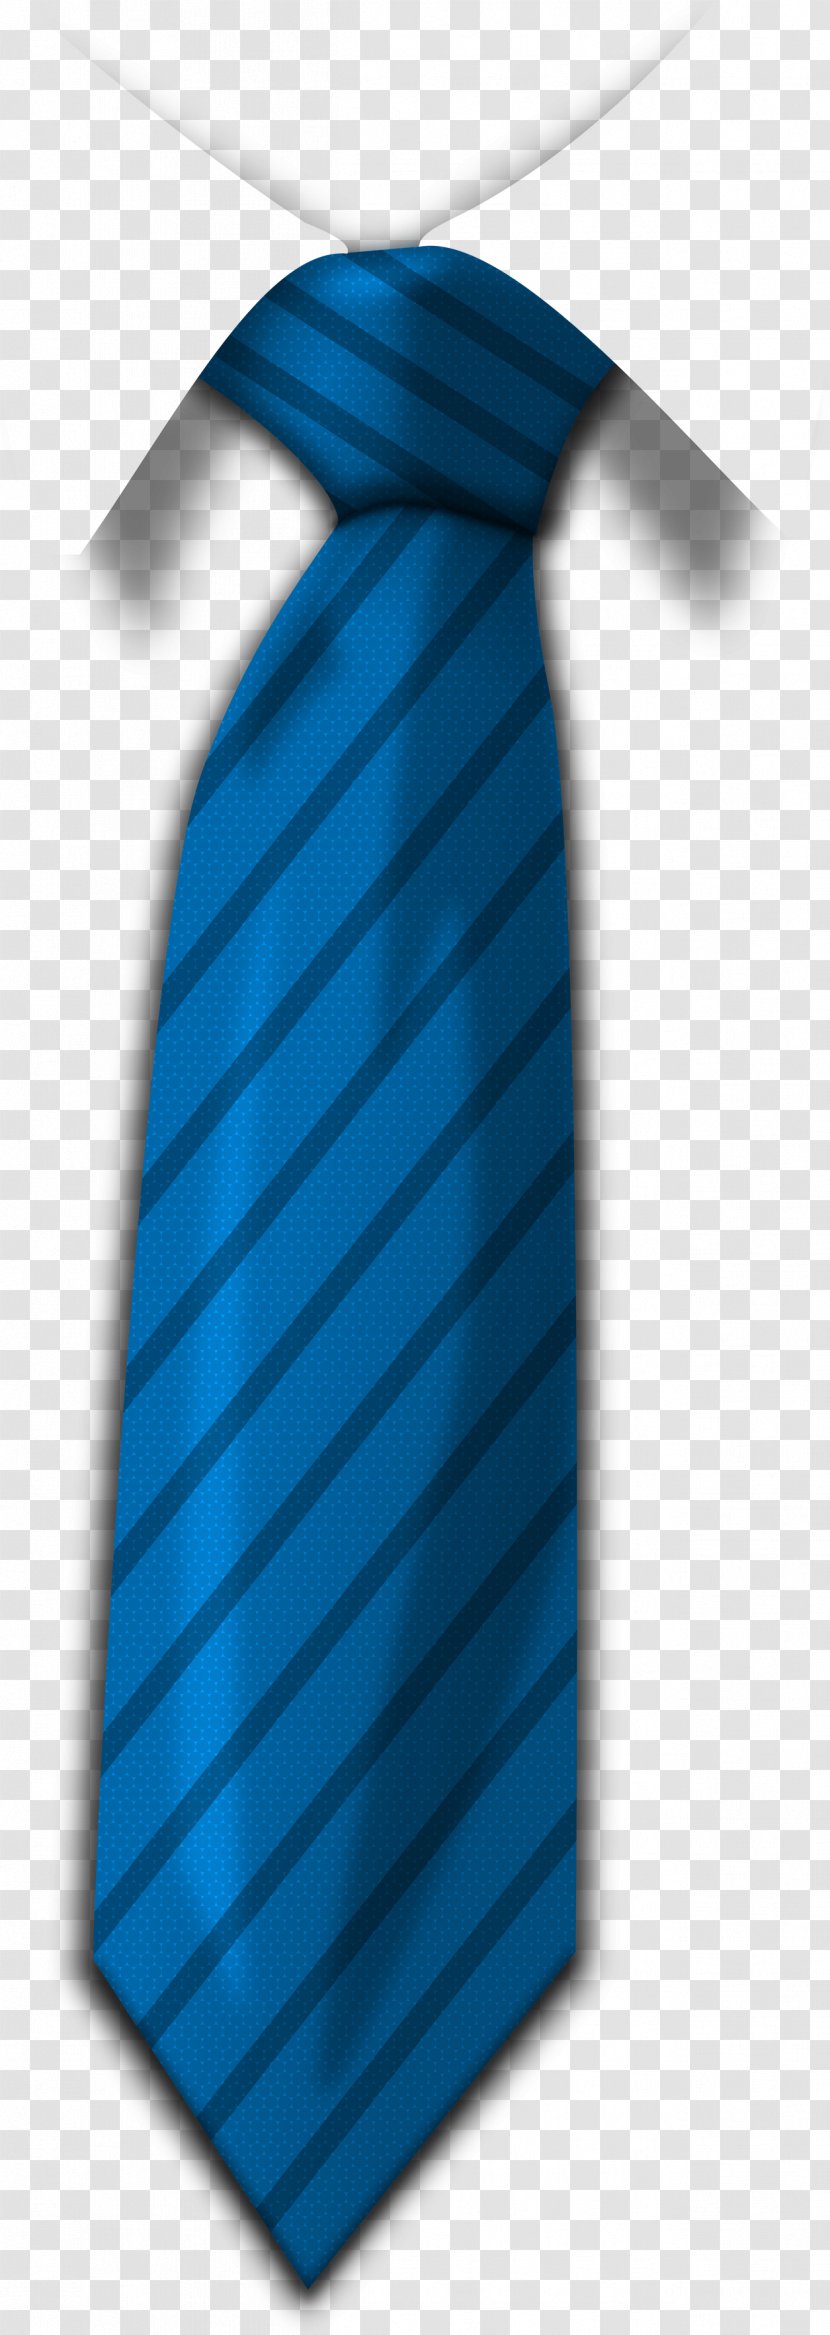 Necktie Icon Clip Art - Product Design - Blue Tie Image Transparent PNG